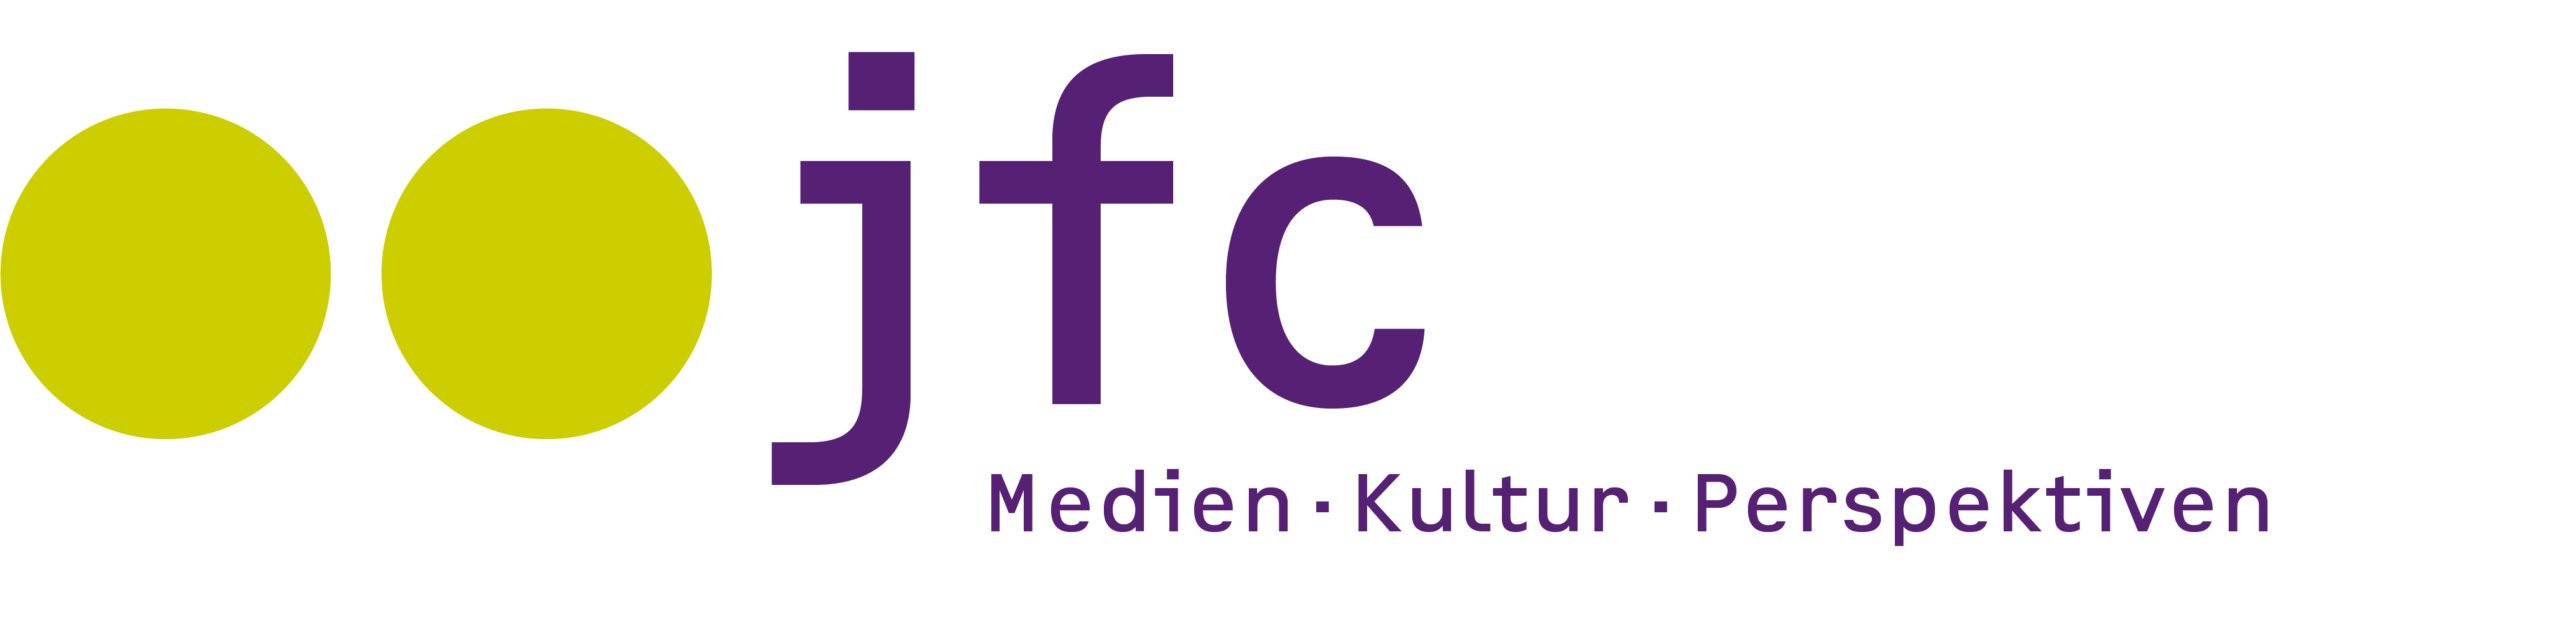 Logo des jfc Medienzentrums mit der Unterzeile "Medien · Kultur · Perspektiven"